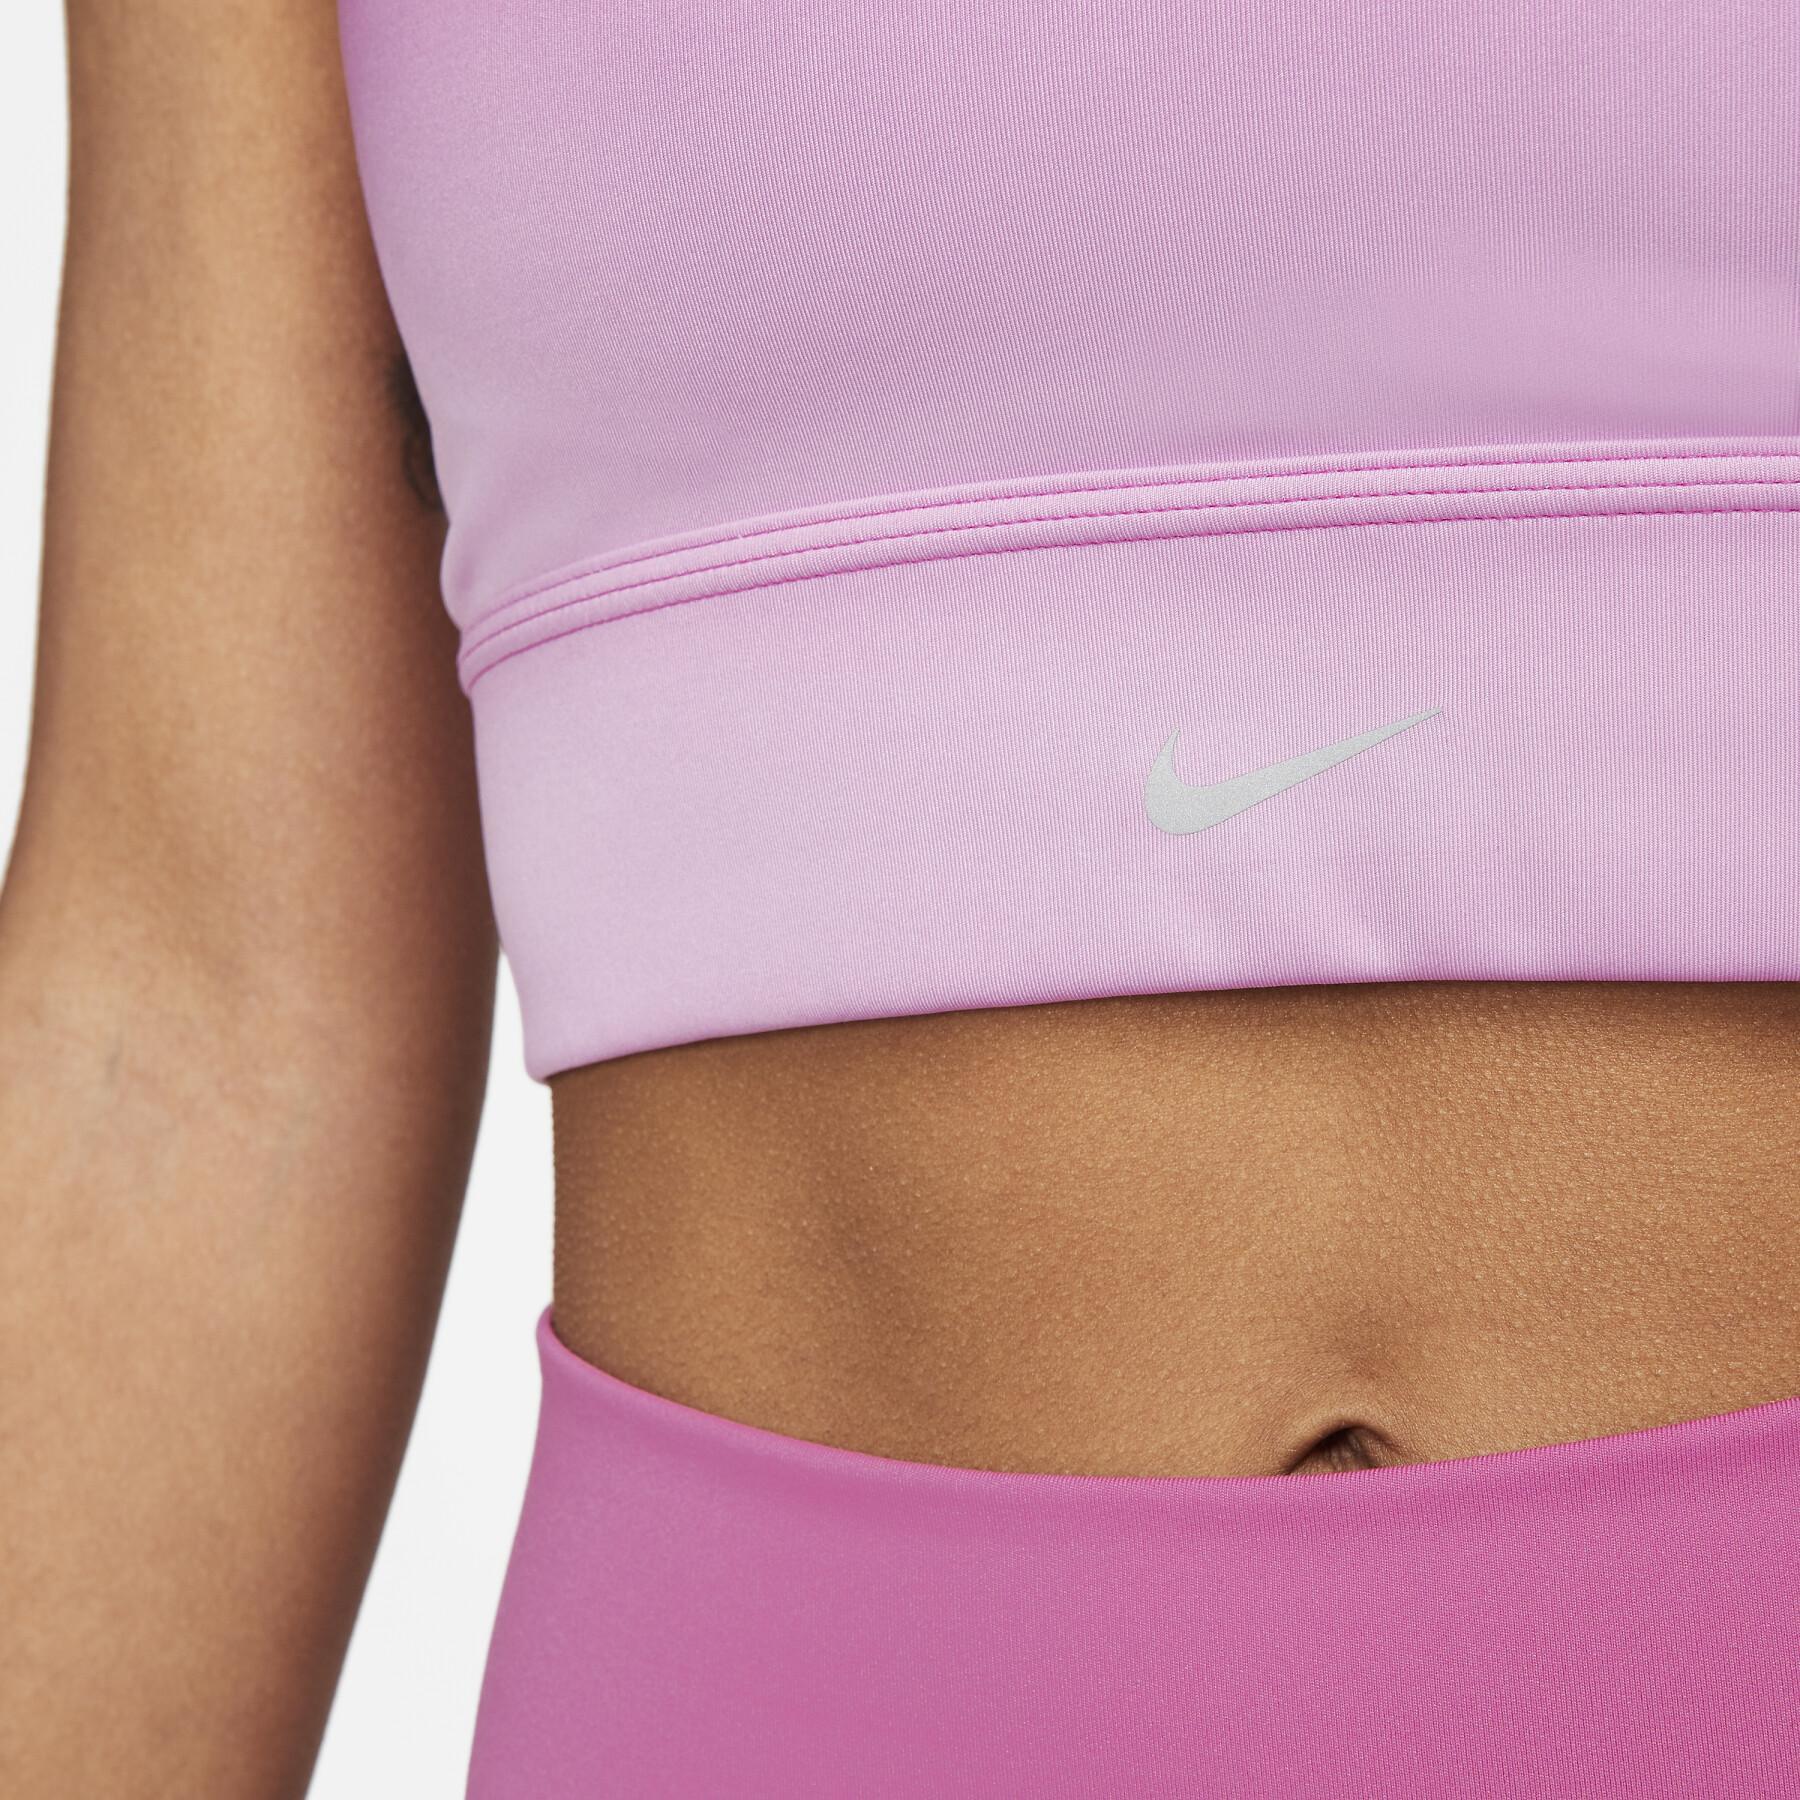 Women's bra Nike Dri-FIT Swoosh